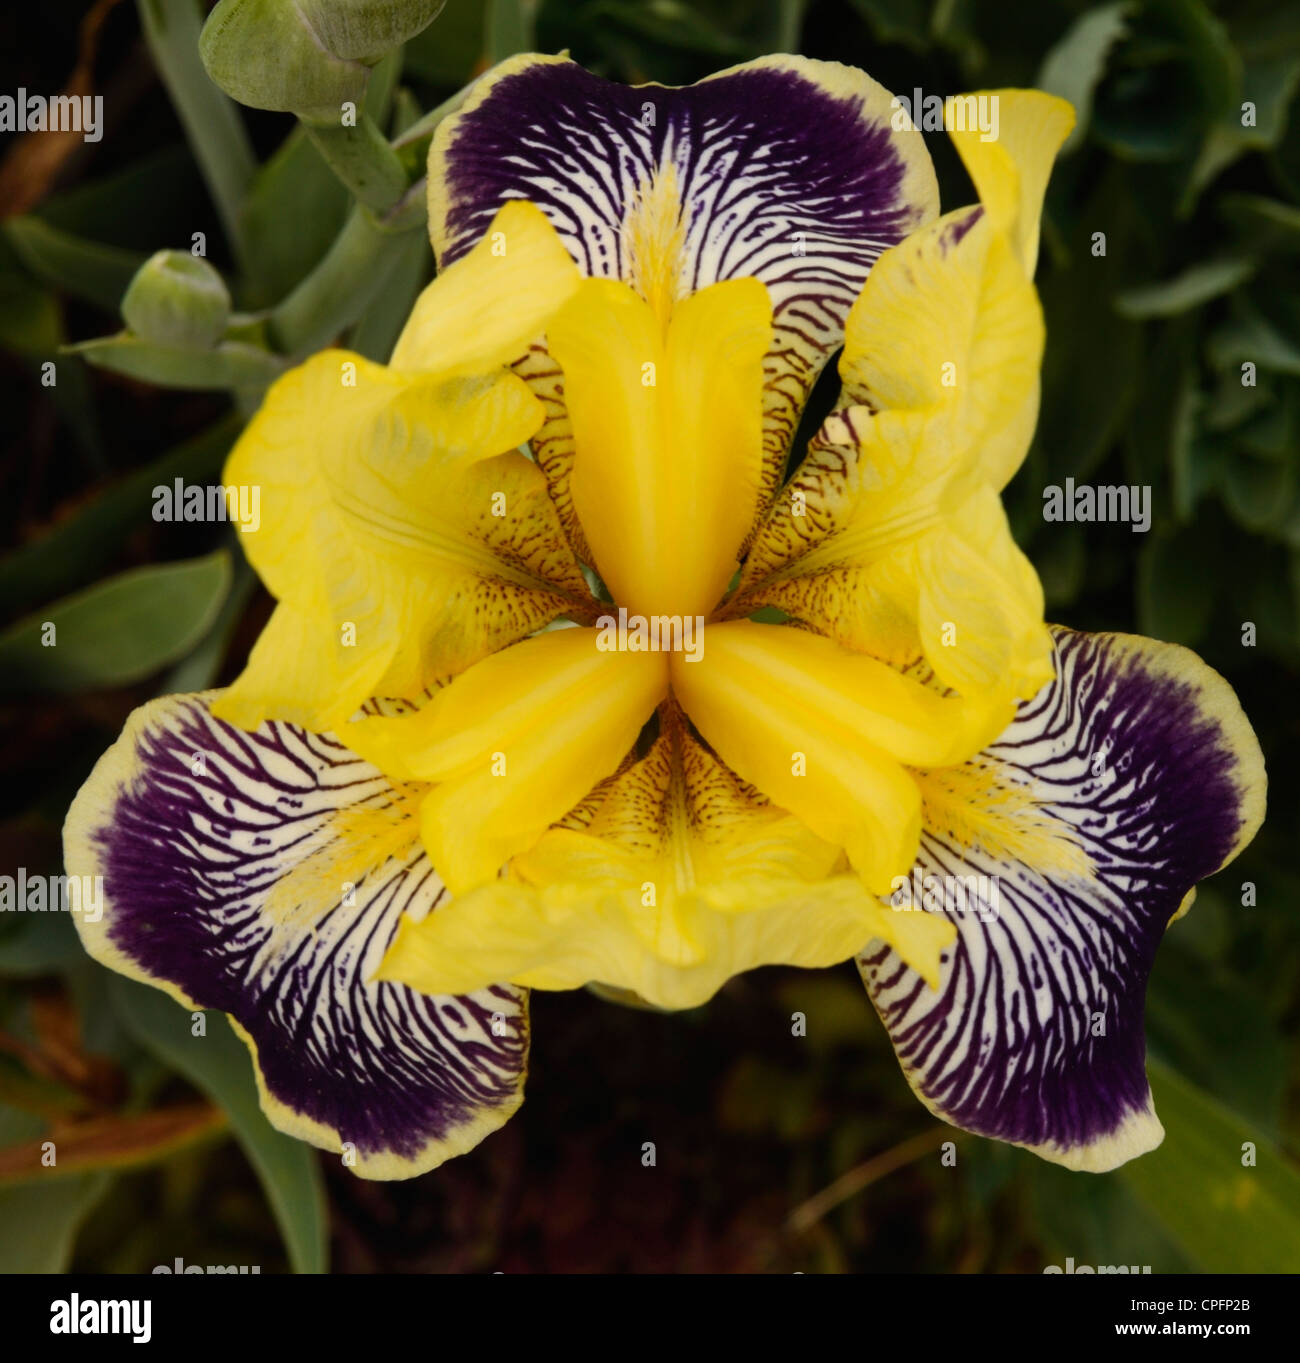 German Iris, Spring Flower, Ontario, Canada Stock Photo